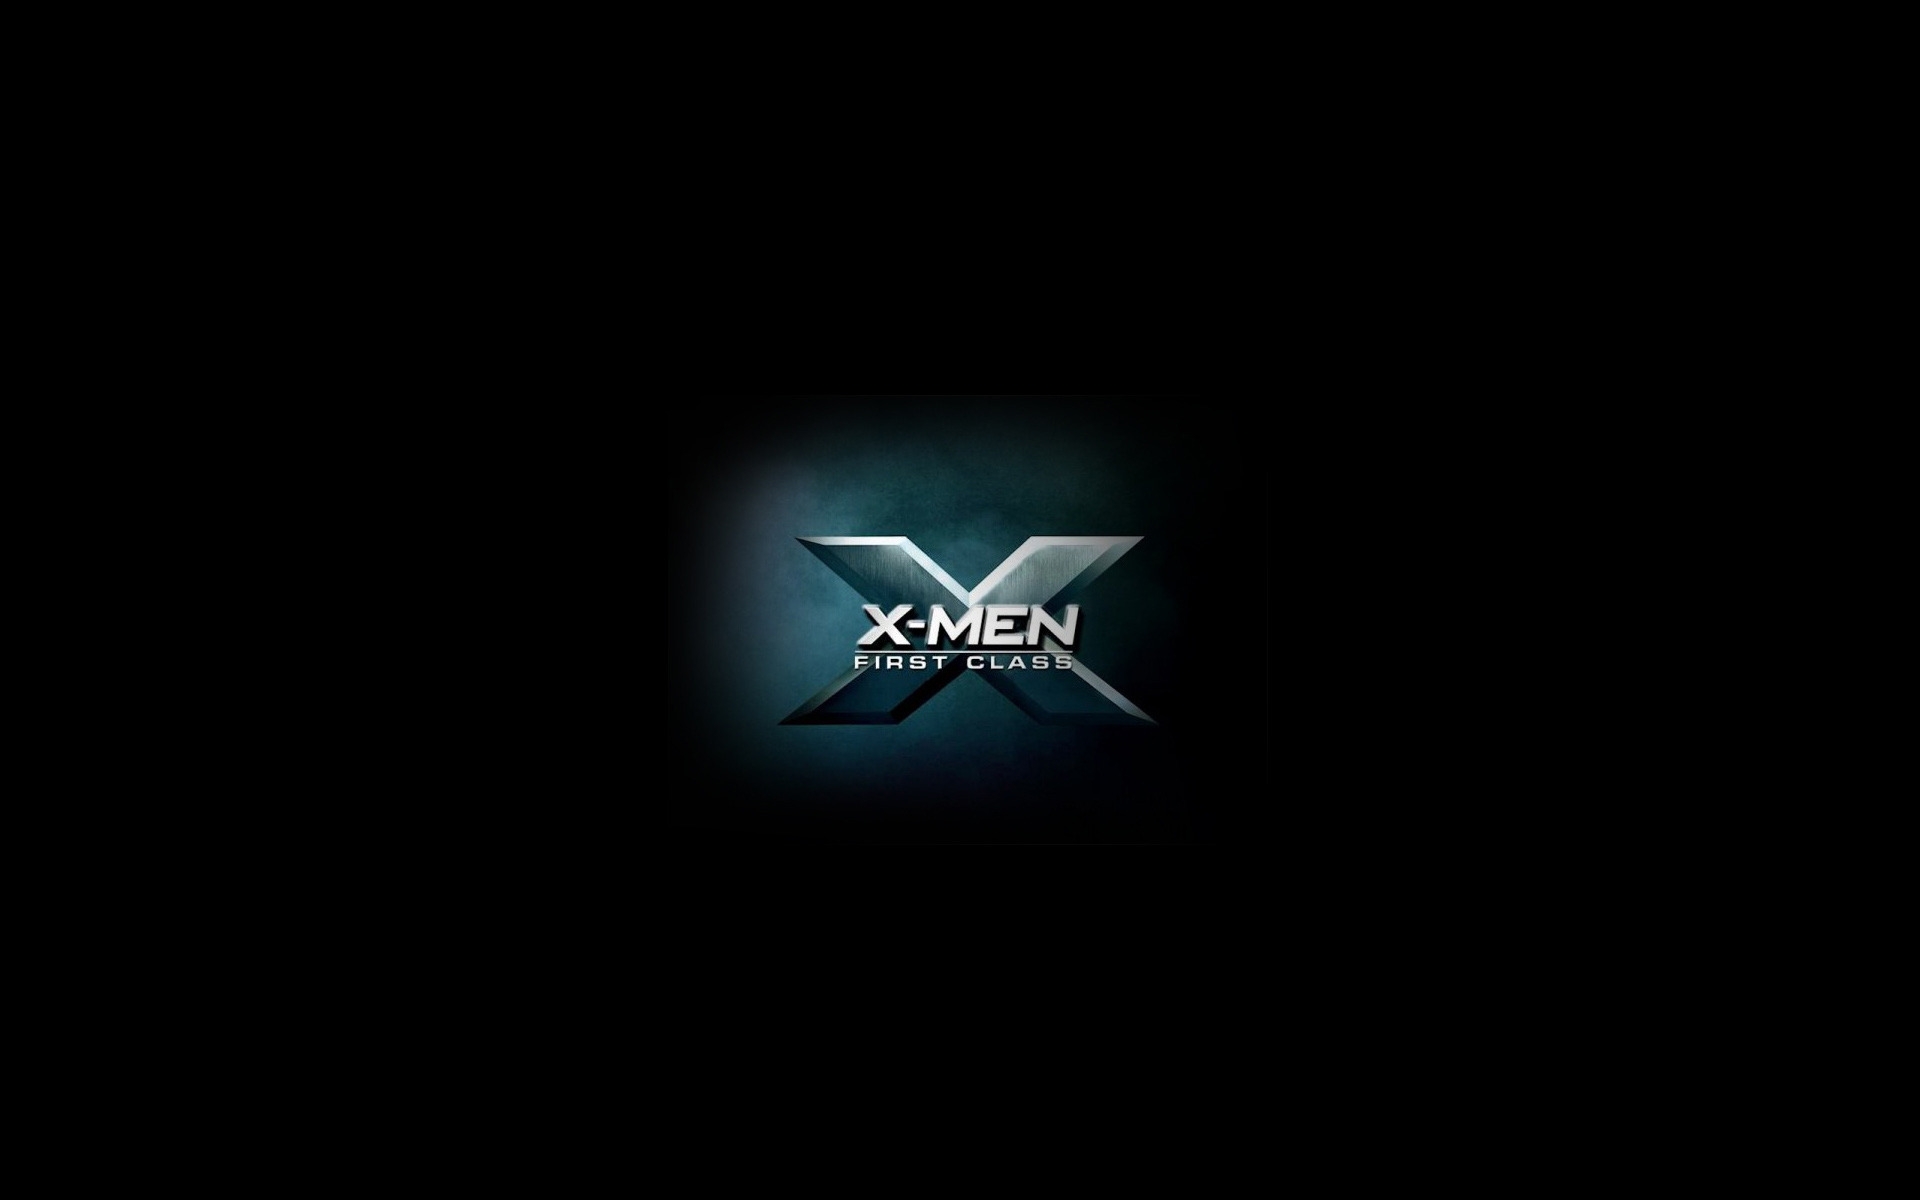 X Men First Class 2011 for 1920 x 1200 widescreen resolution